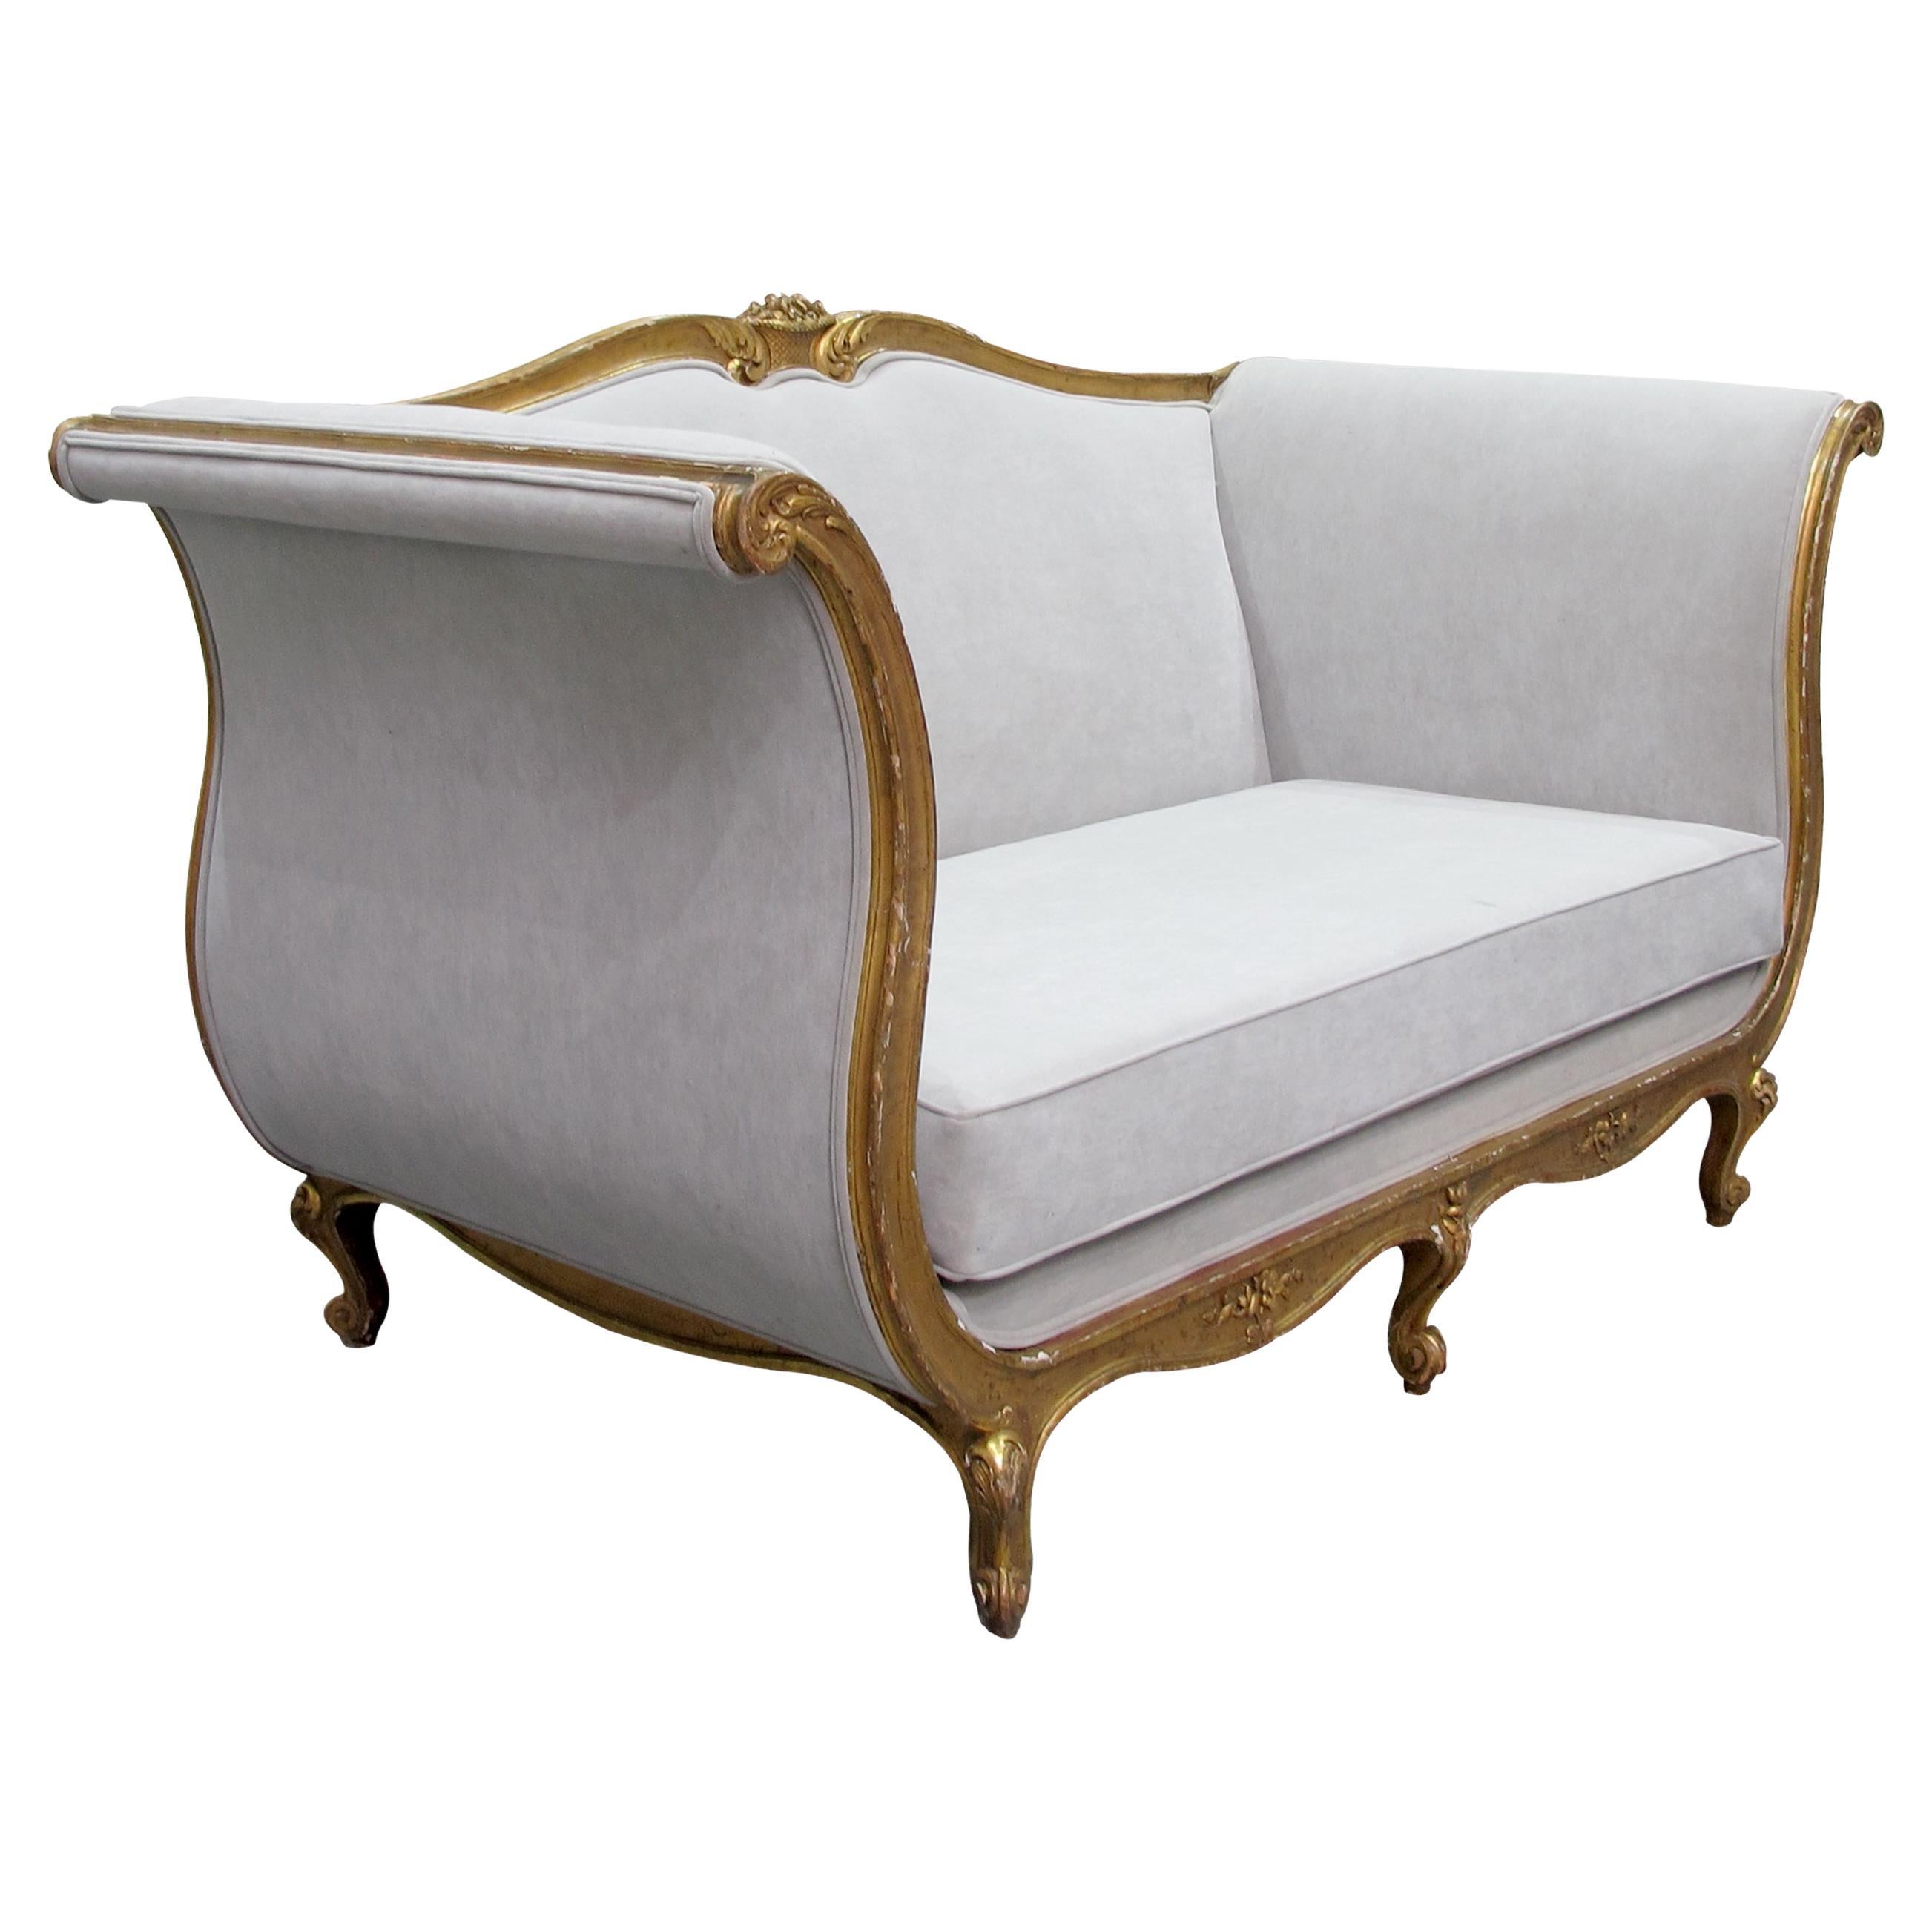 Fin du 19ème siècle, canapé français à grande armature dorée, nouvellement tapissé en vente